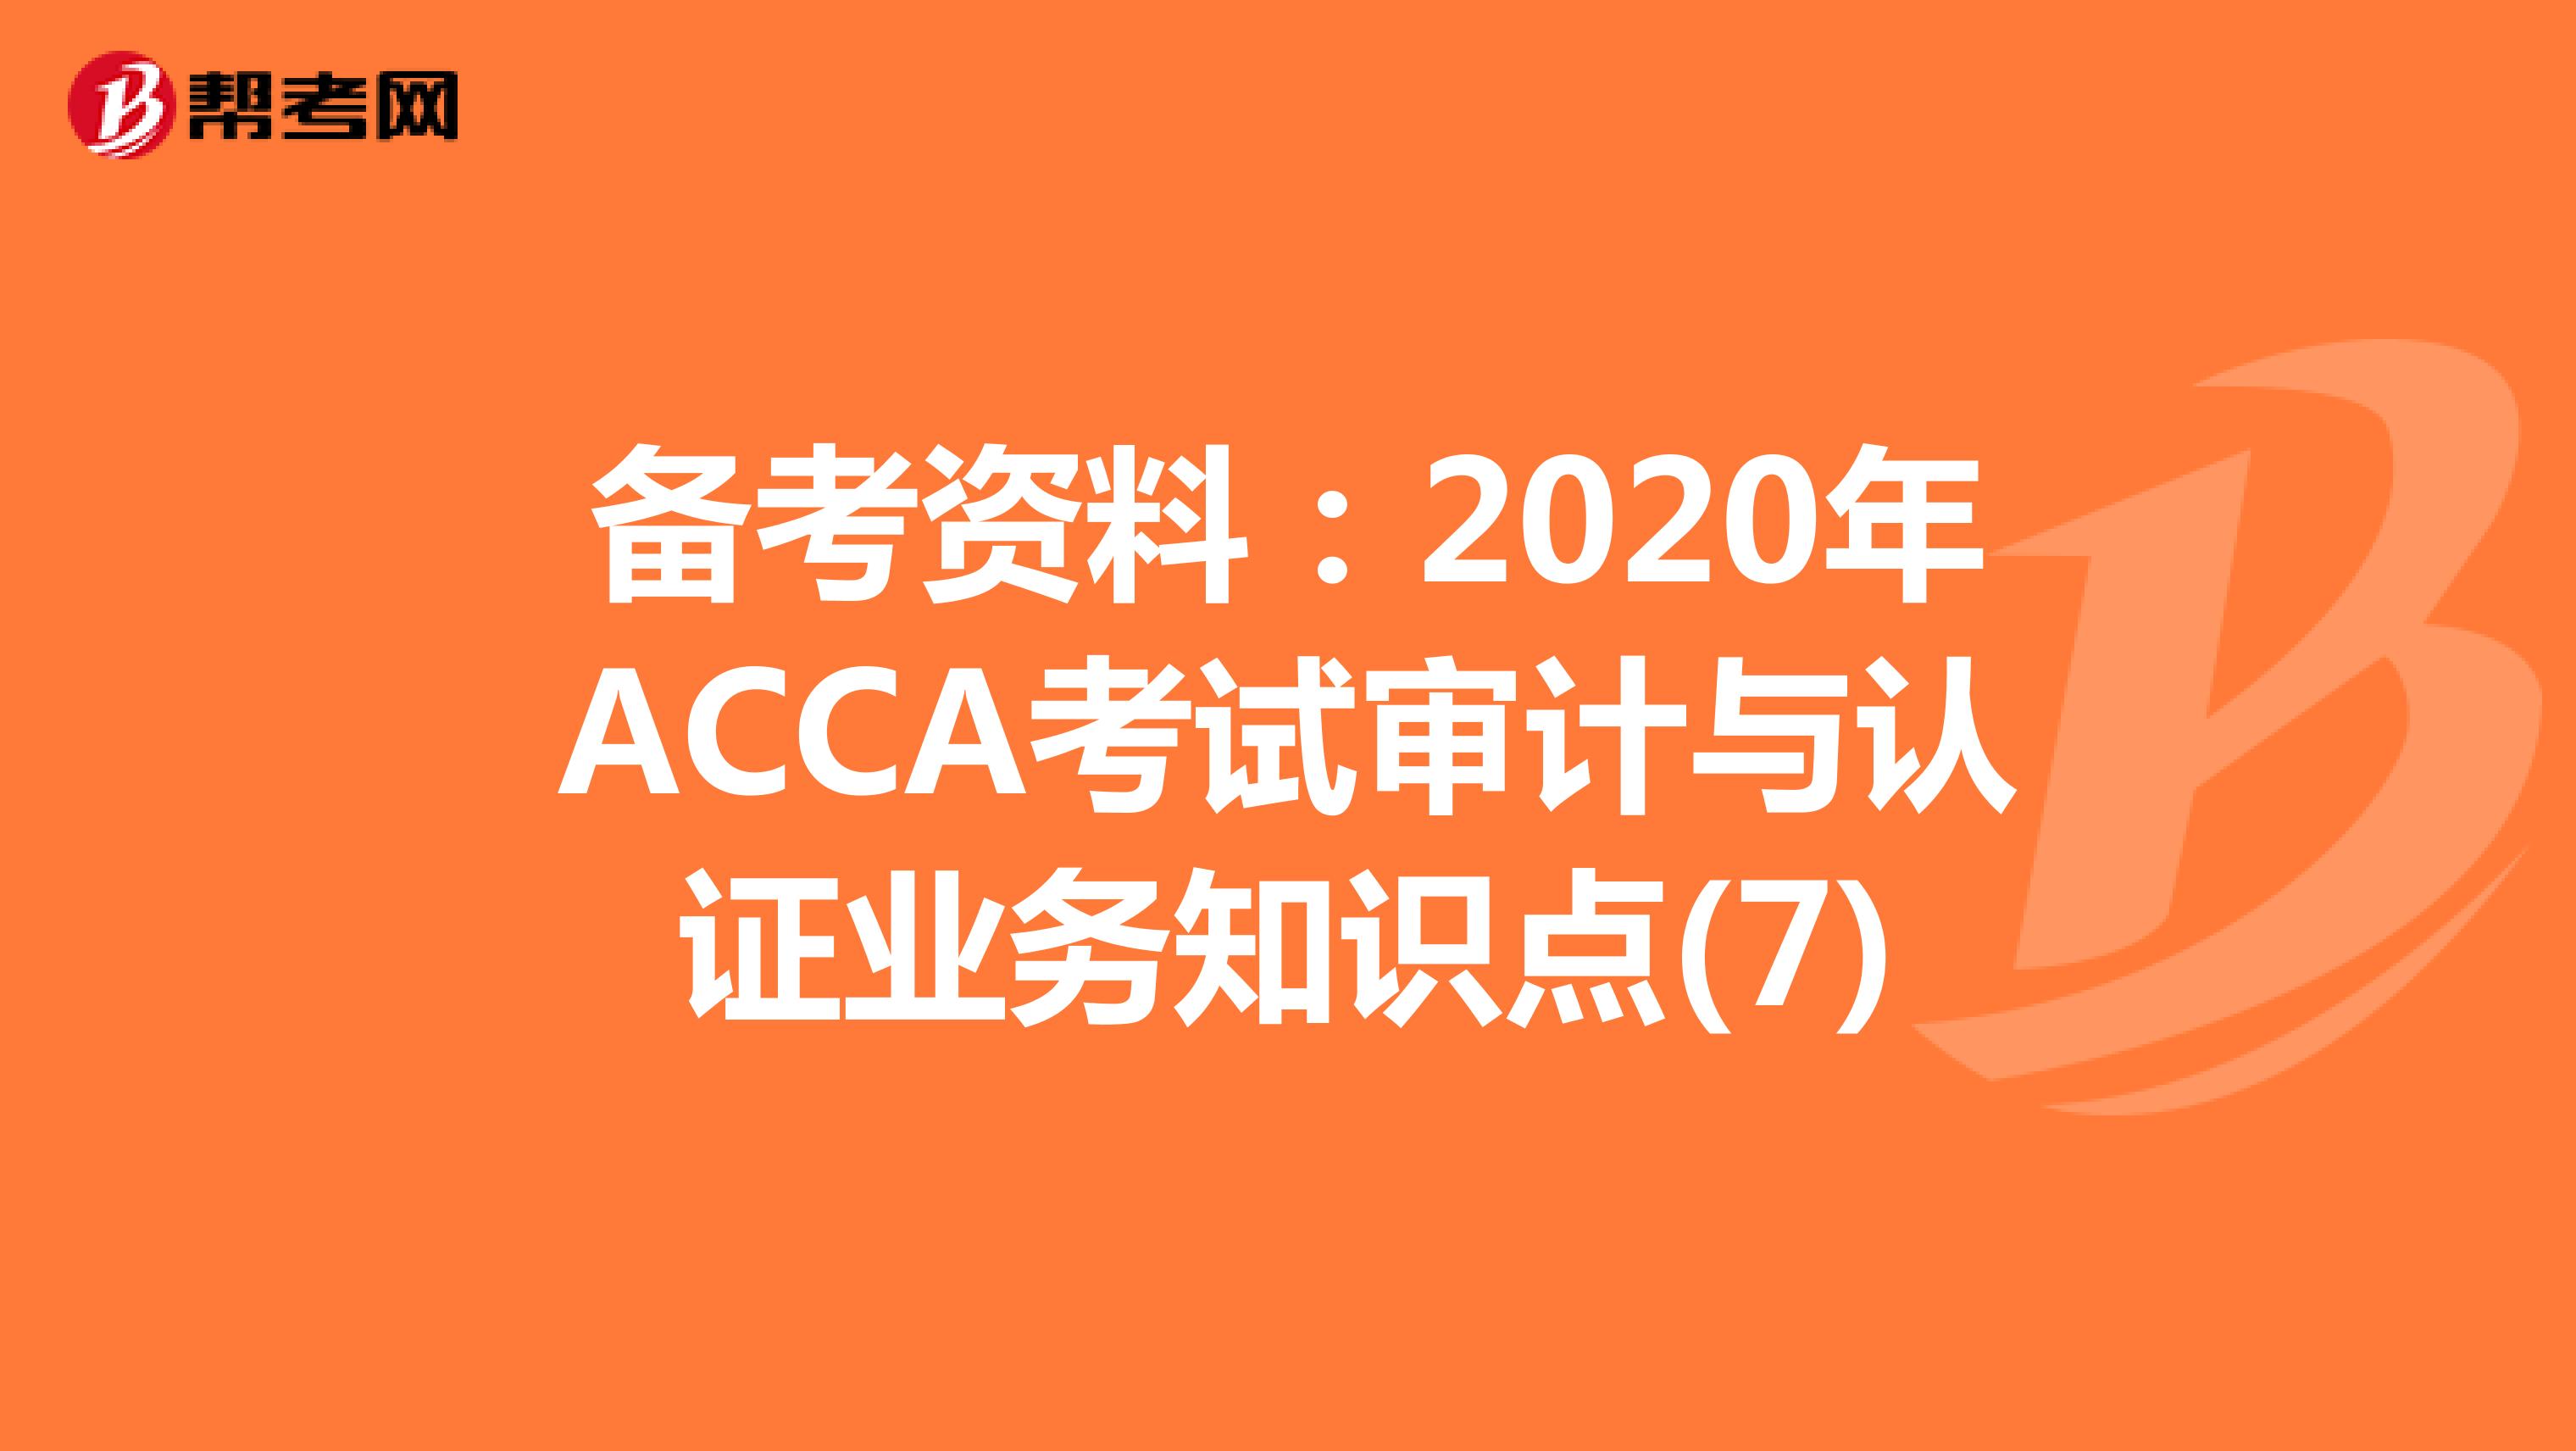 备考资料：2020年ACCA考试审计与认证业务知识点(7)